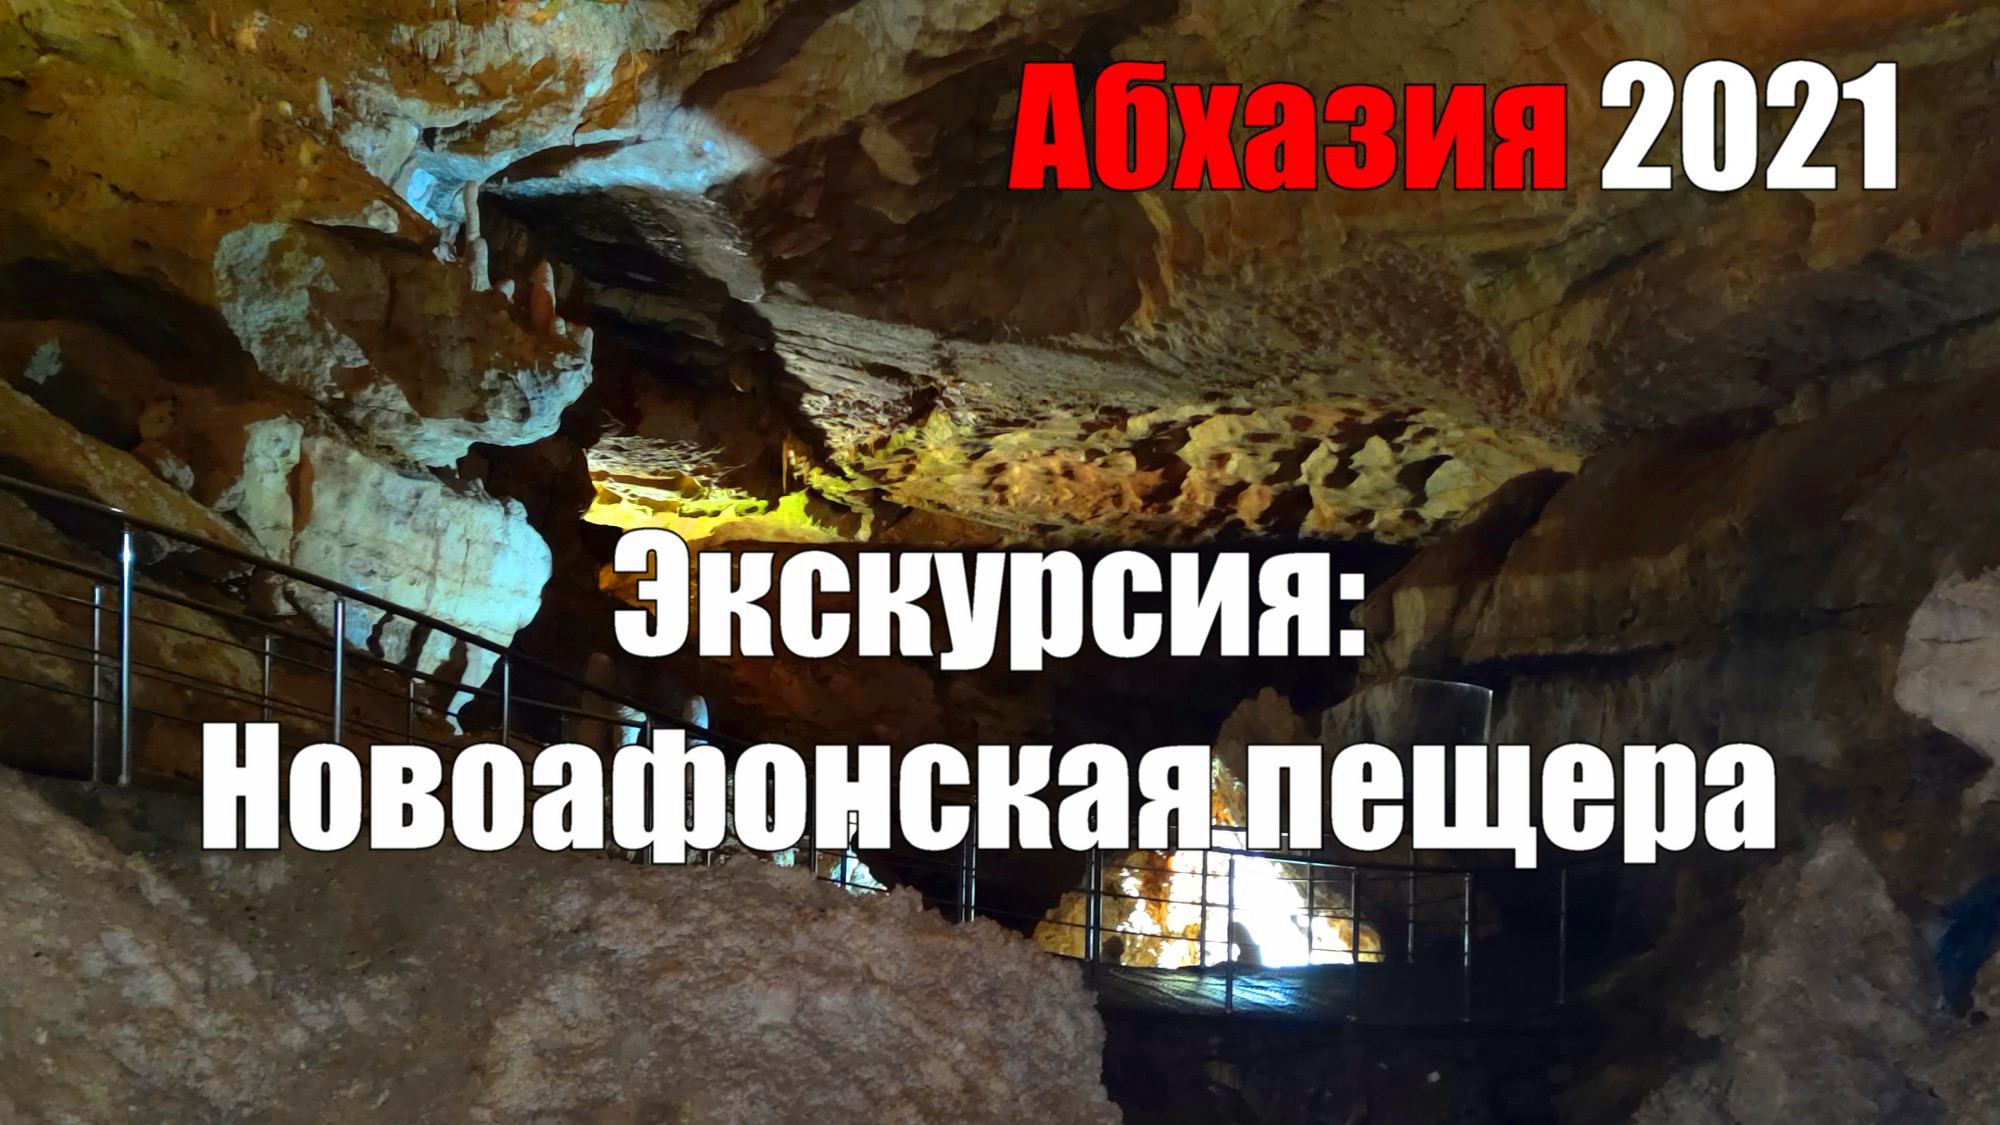 Экскурсия. Новоафонская пещера. Абхазия 2021